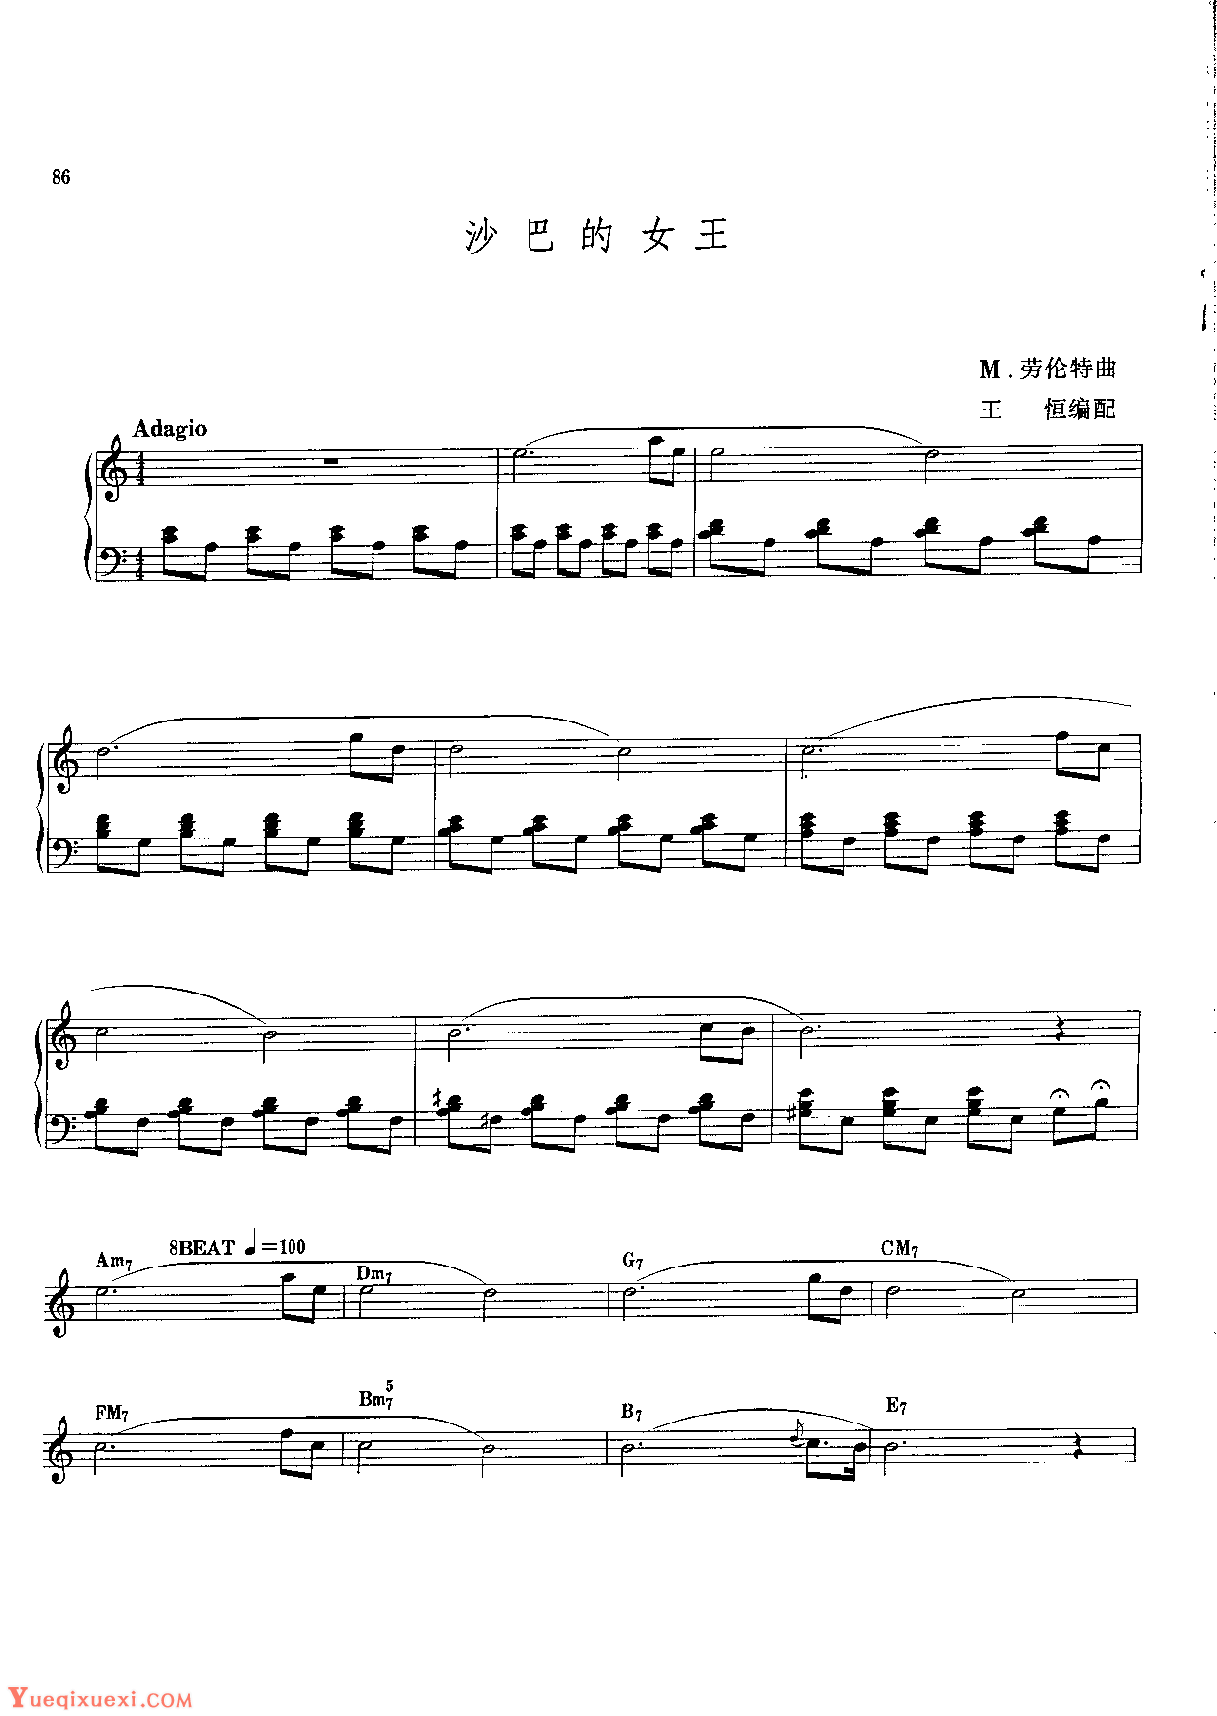 电子琴五级独奏乐曲《沙巴的女王》 M.劳伦特曲